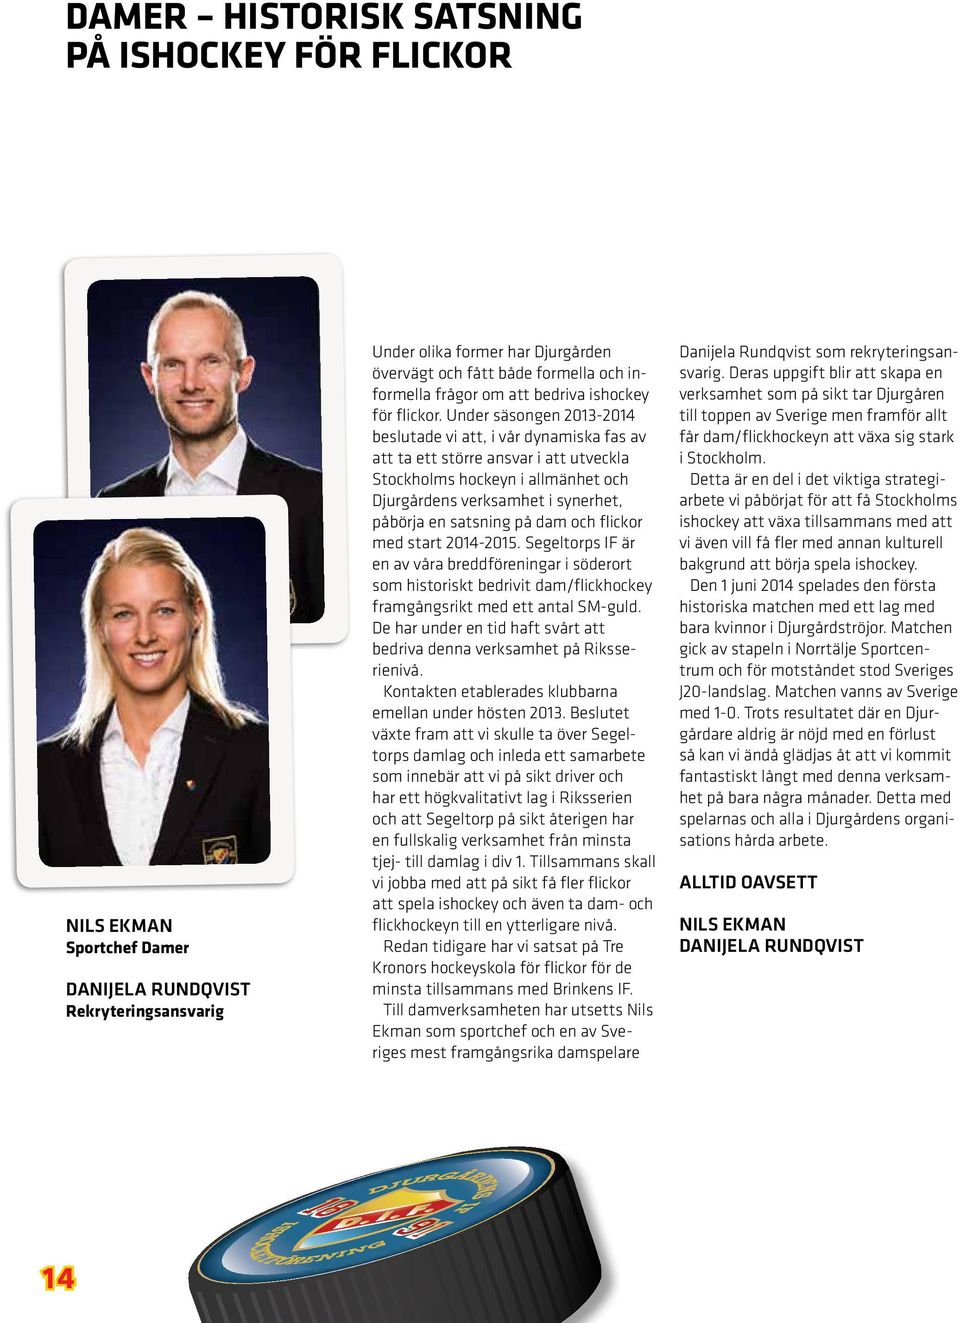 Under säsongen 2013-2014 beslutade vi att, i vår dynamiska fas av att ta ett större ansvar i att utveckla Stockholms hockeyn i allmänhet och Djurgårdens verksamhet i synerhet, påbörja en satsning på